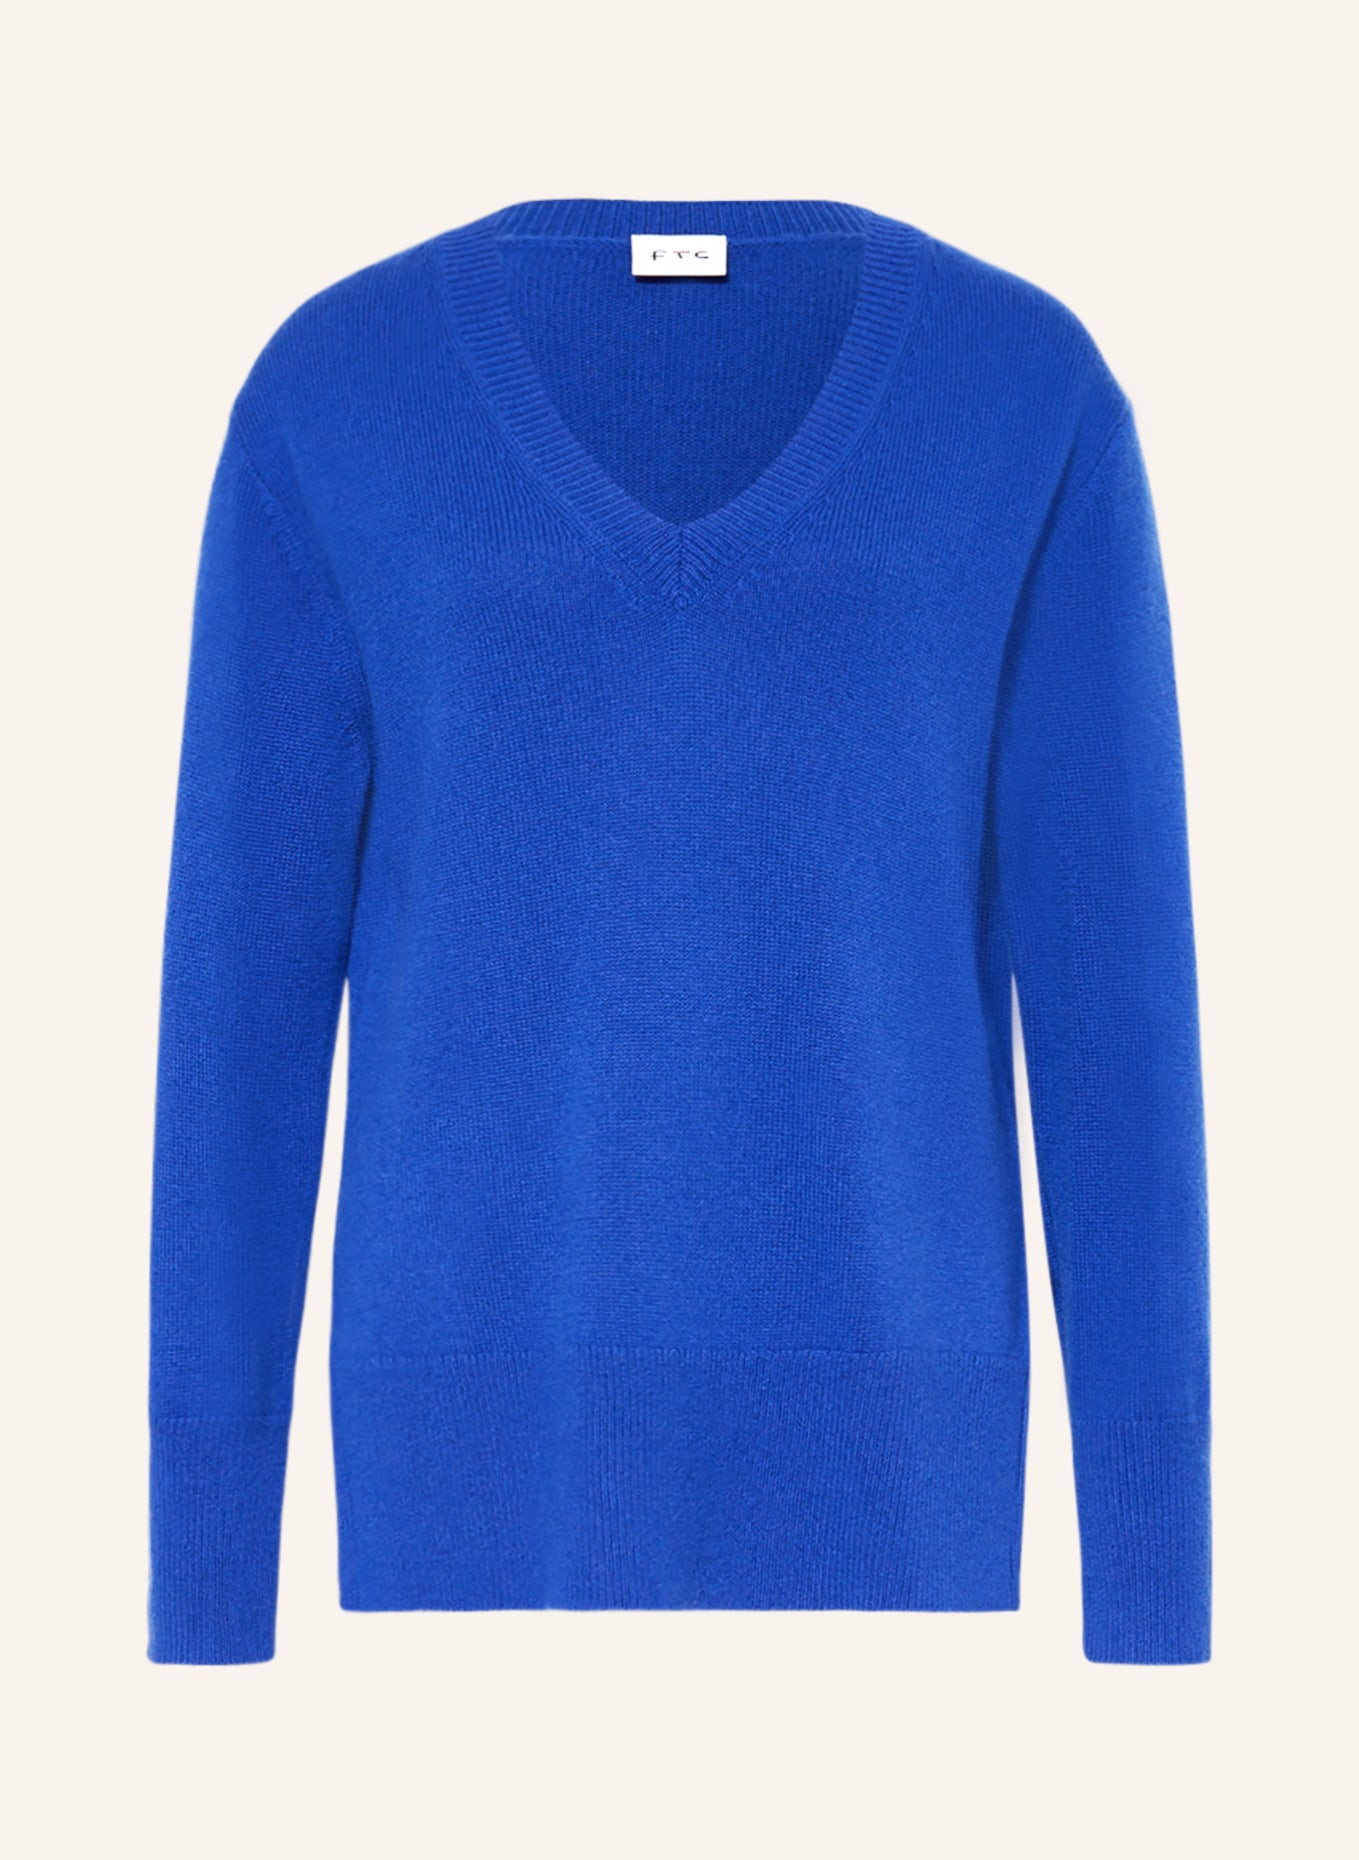 FTC CASHMERE Cashmere-Pullover, Farbe: BLAU (Bild 1)